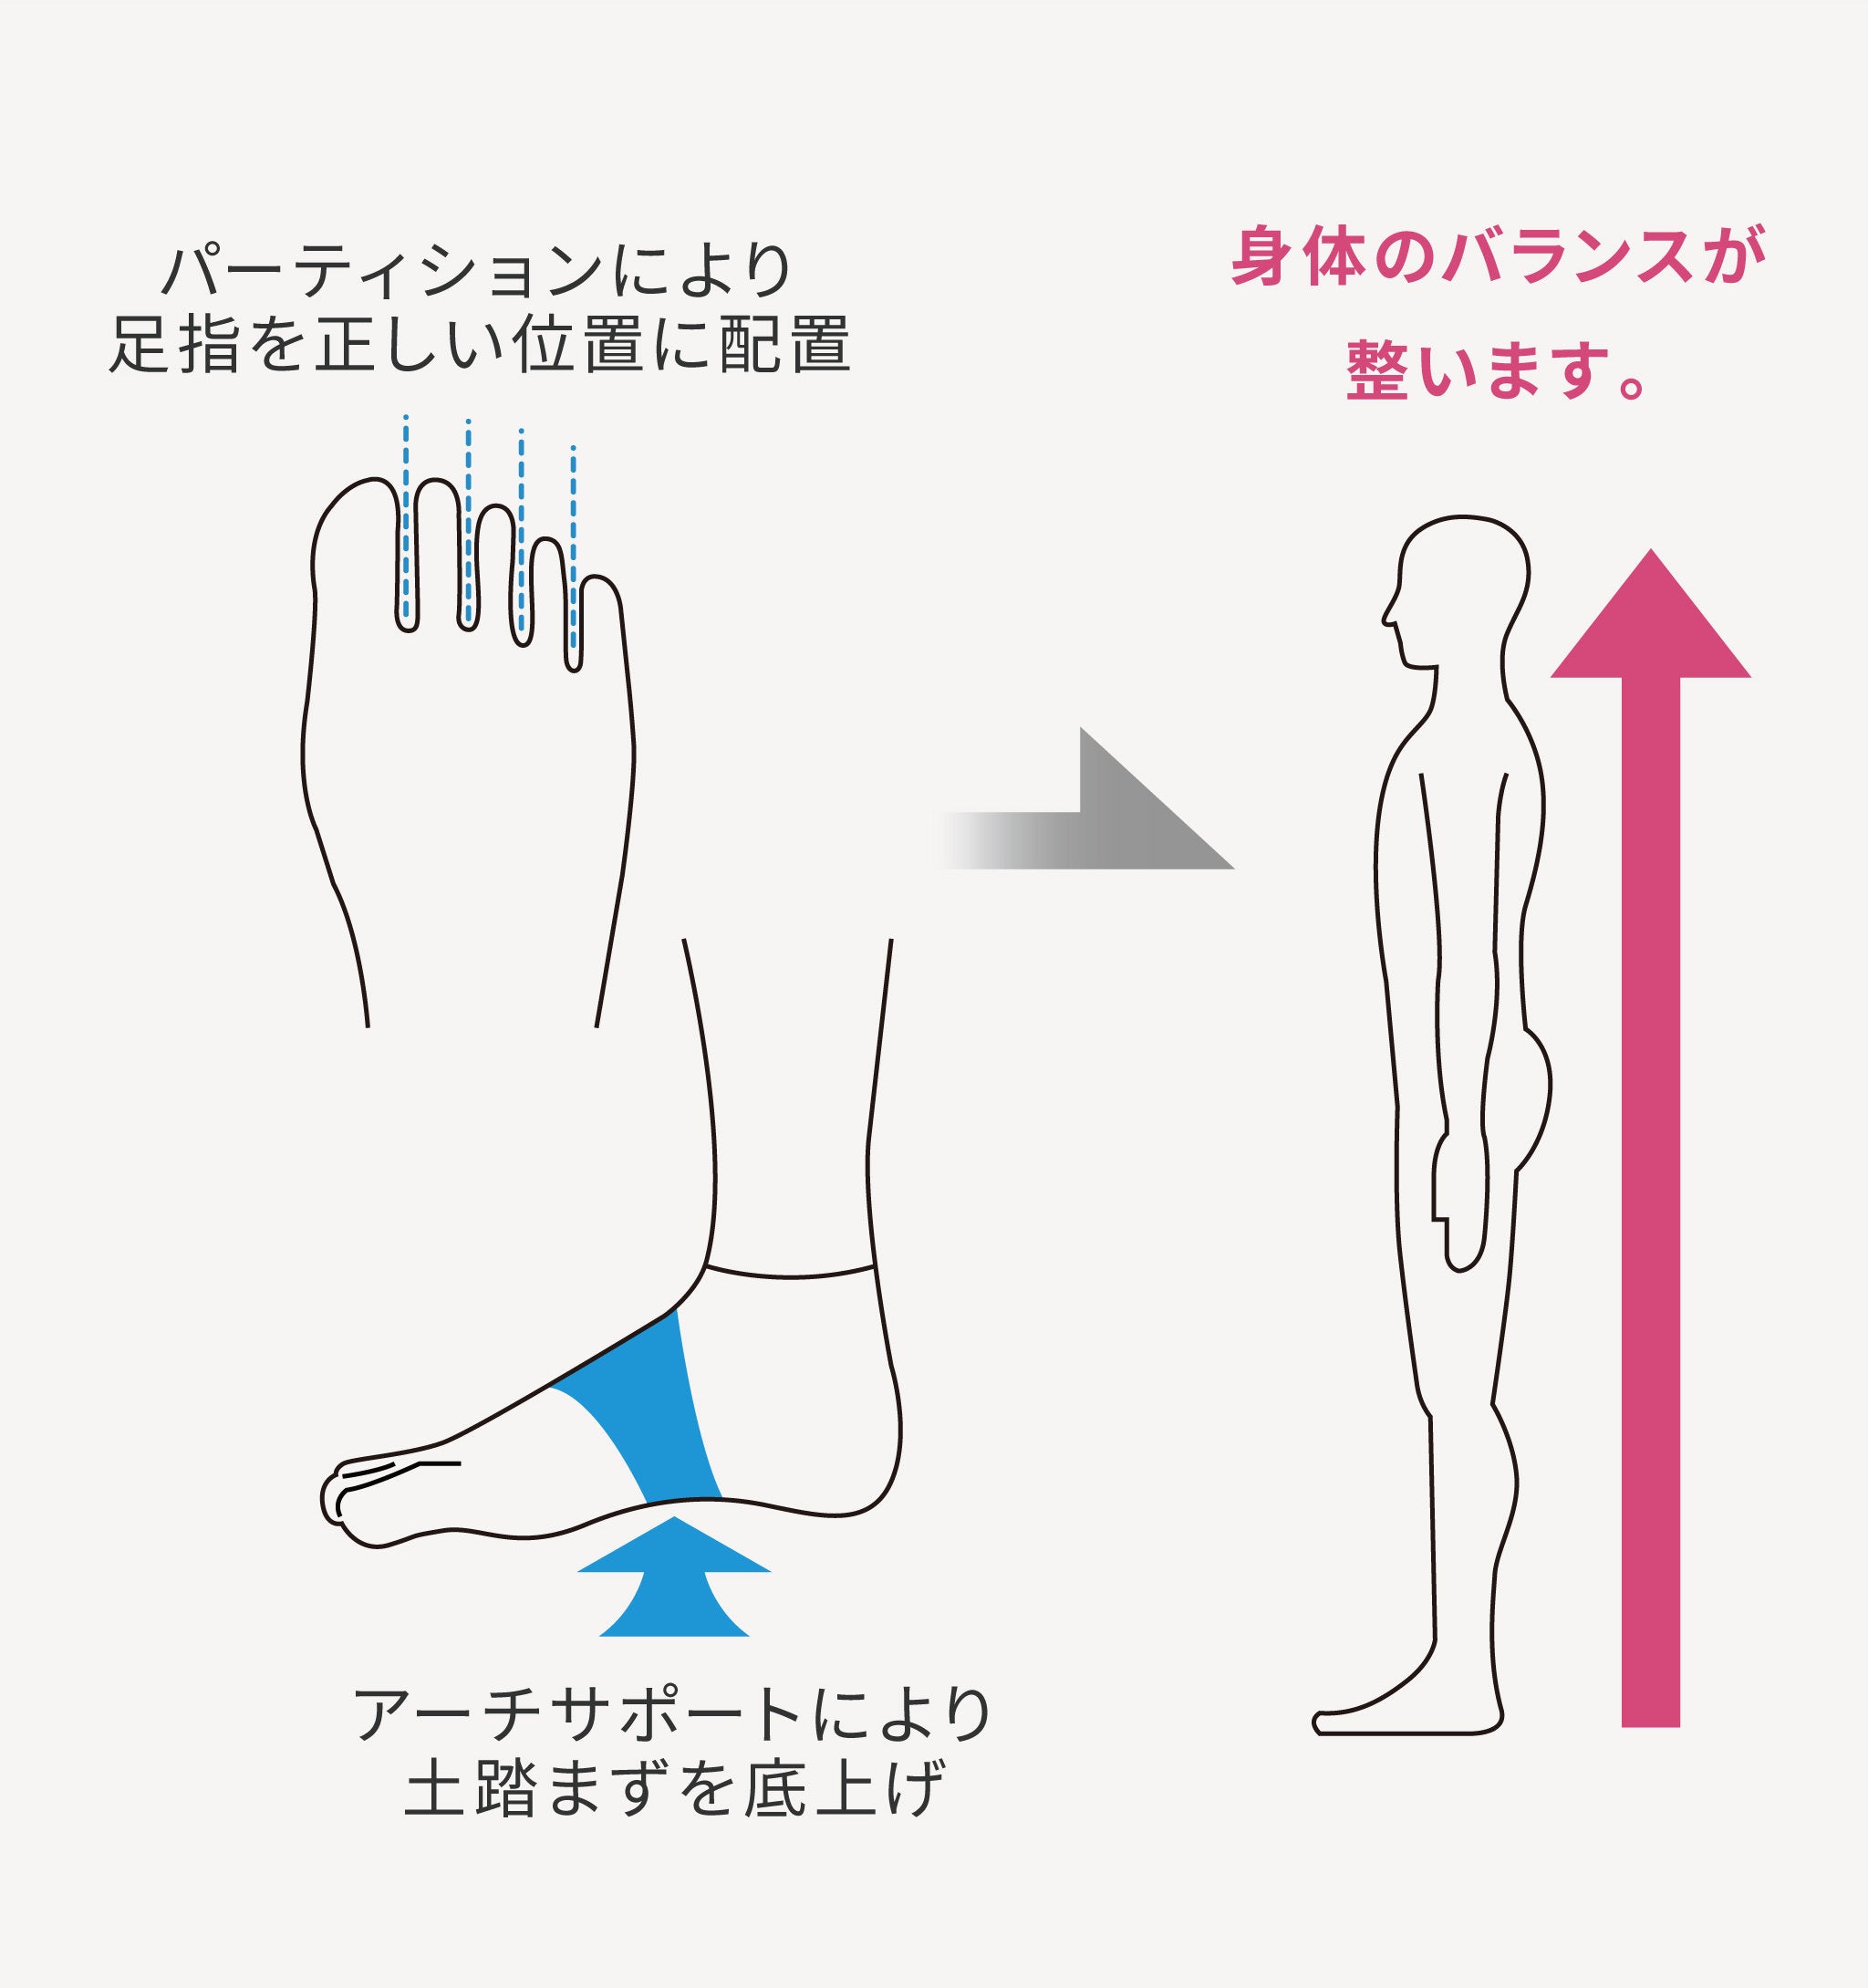 土踏まずを引き上げ、足底筋を保護することにより足の疲労を減らし、身体のバランスを整えます。